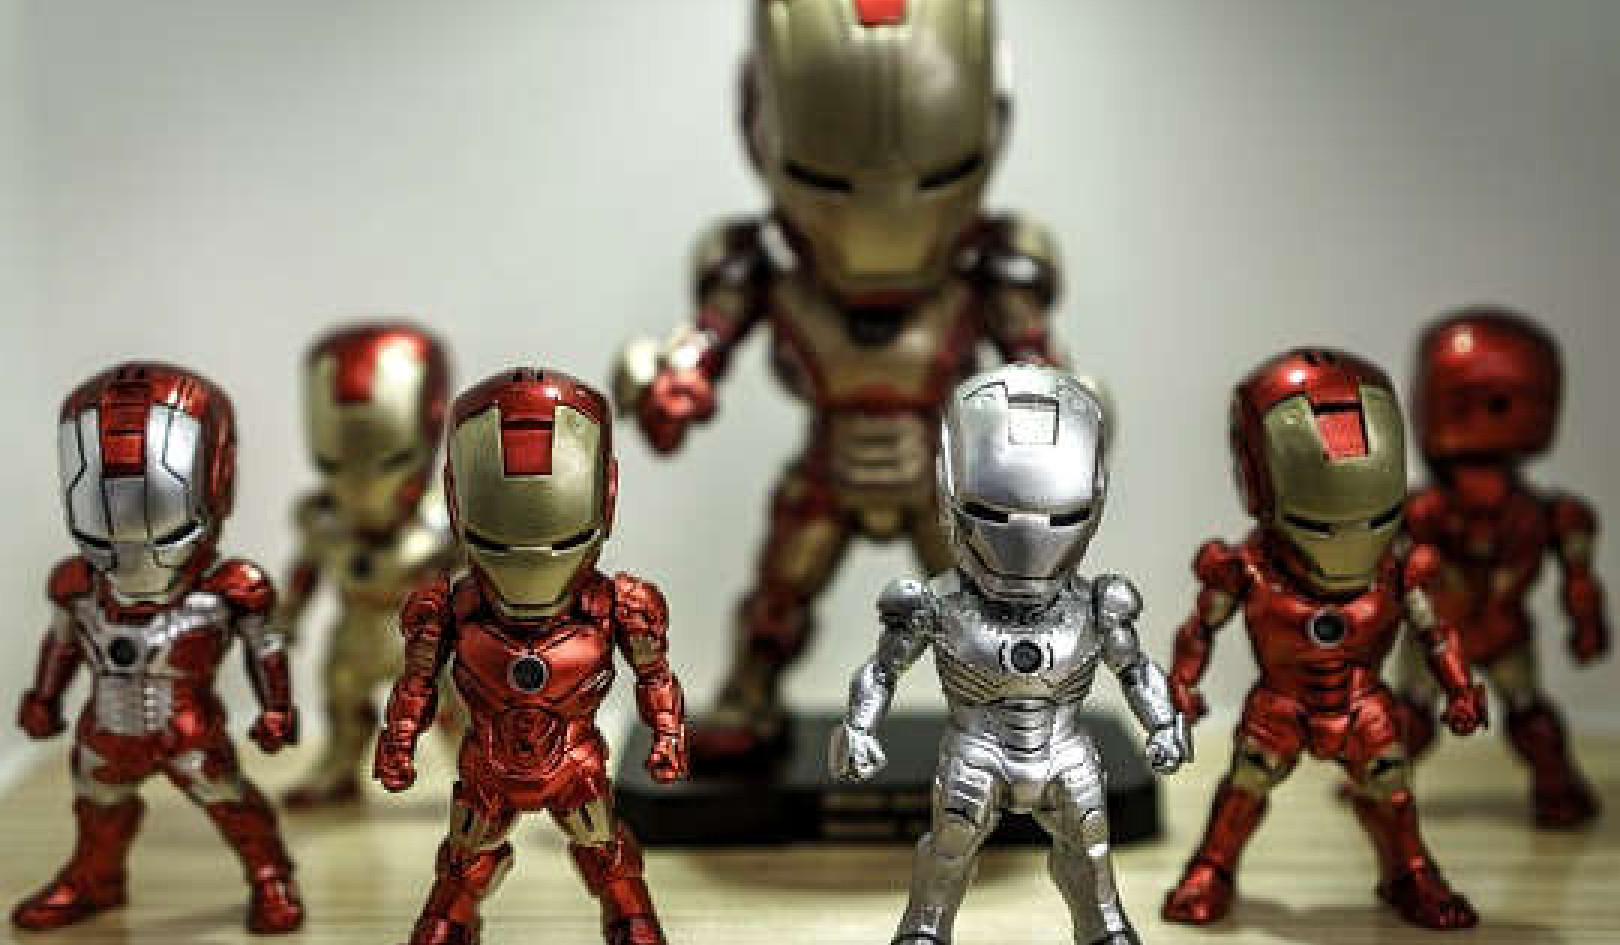 Iron Man: Kuvuruga au Kuamsha?